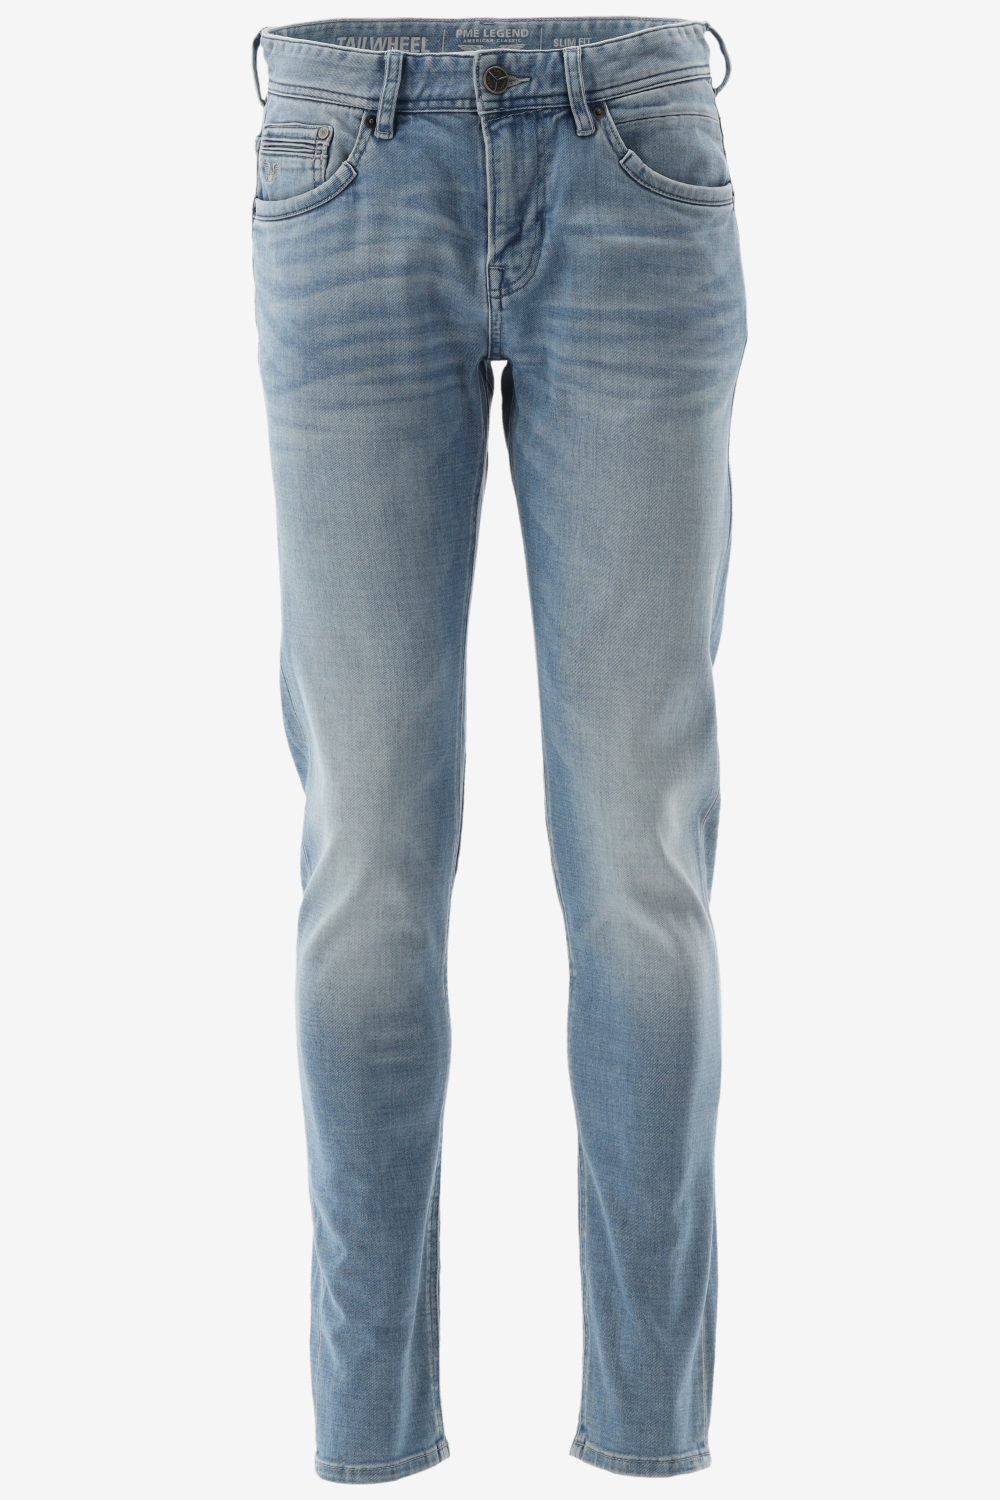 Herenkleding Jeans Pme Legend Slim Fit TAILWEEL - Bergmans Fashion Outlet -  Webshop | GRATIS VERZENDING!